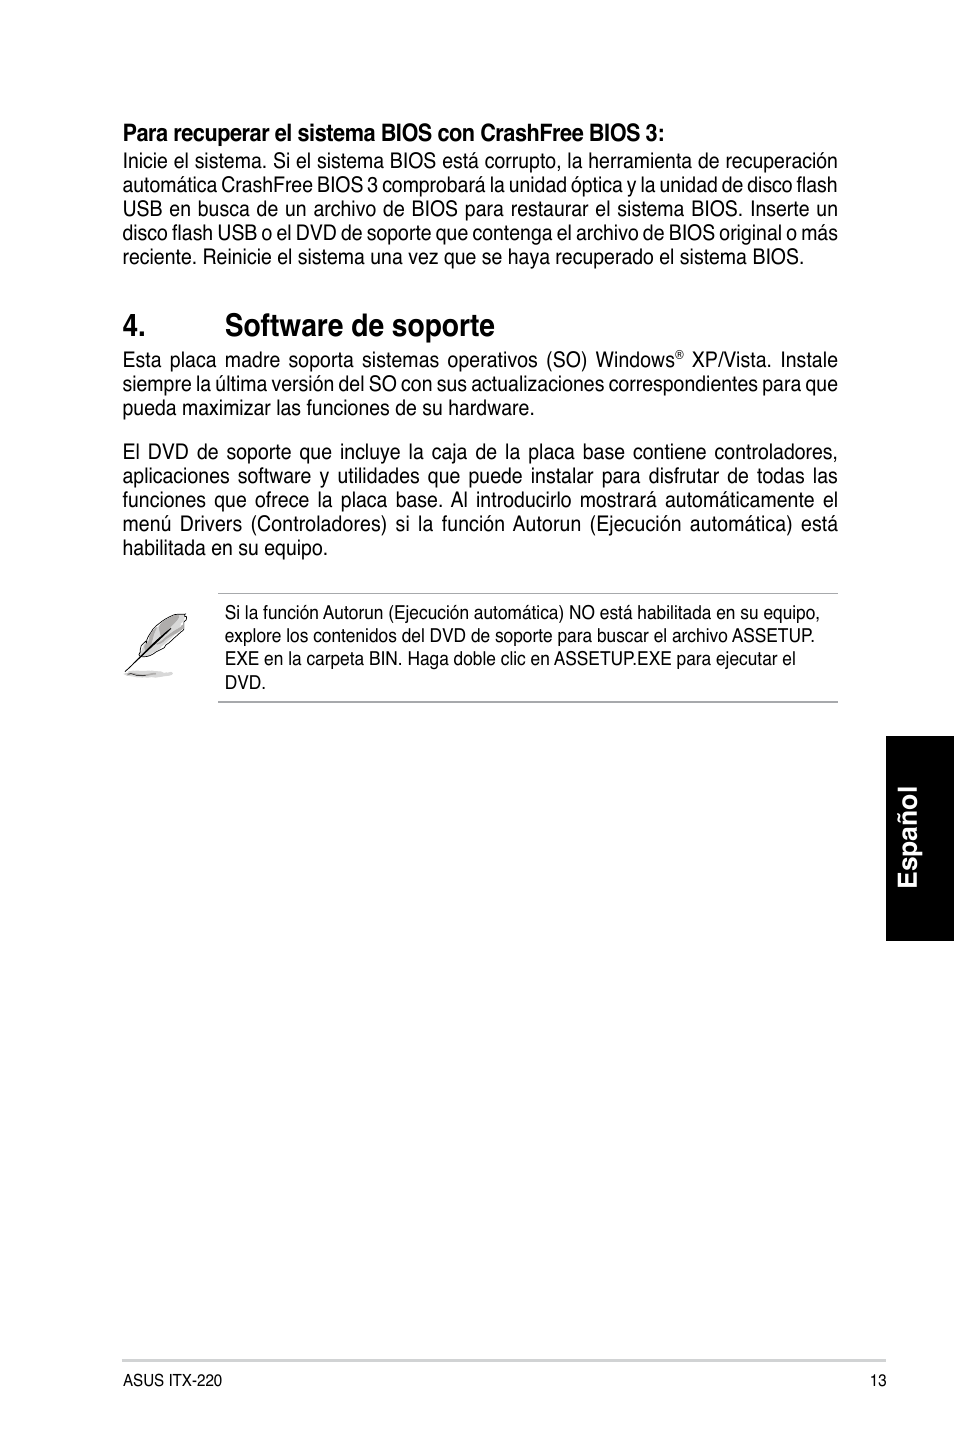 Software de soporte, Español | Asus ITX-220 User Manual | Page 13 / 38 |  Original mode